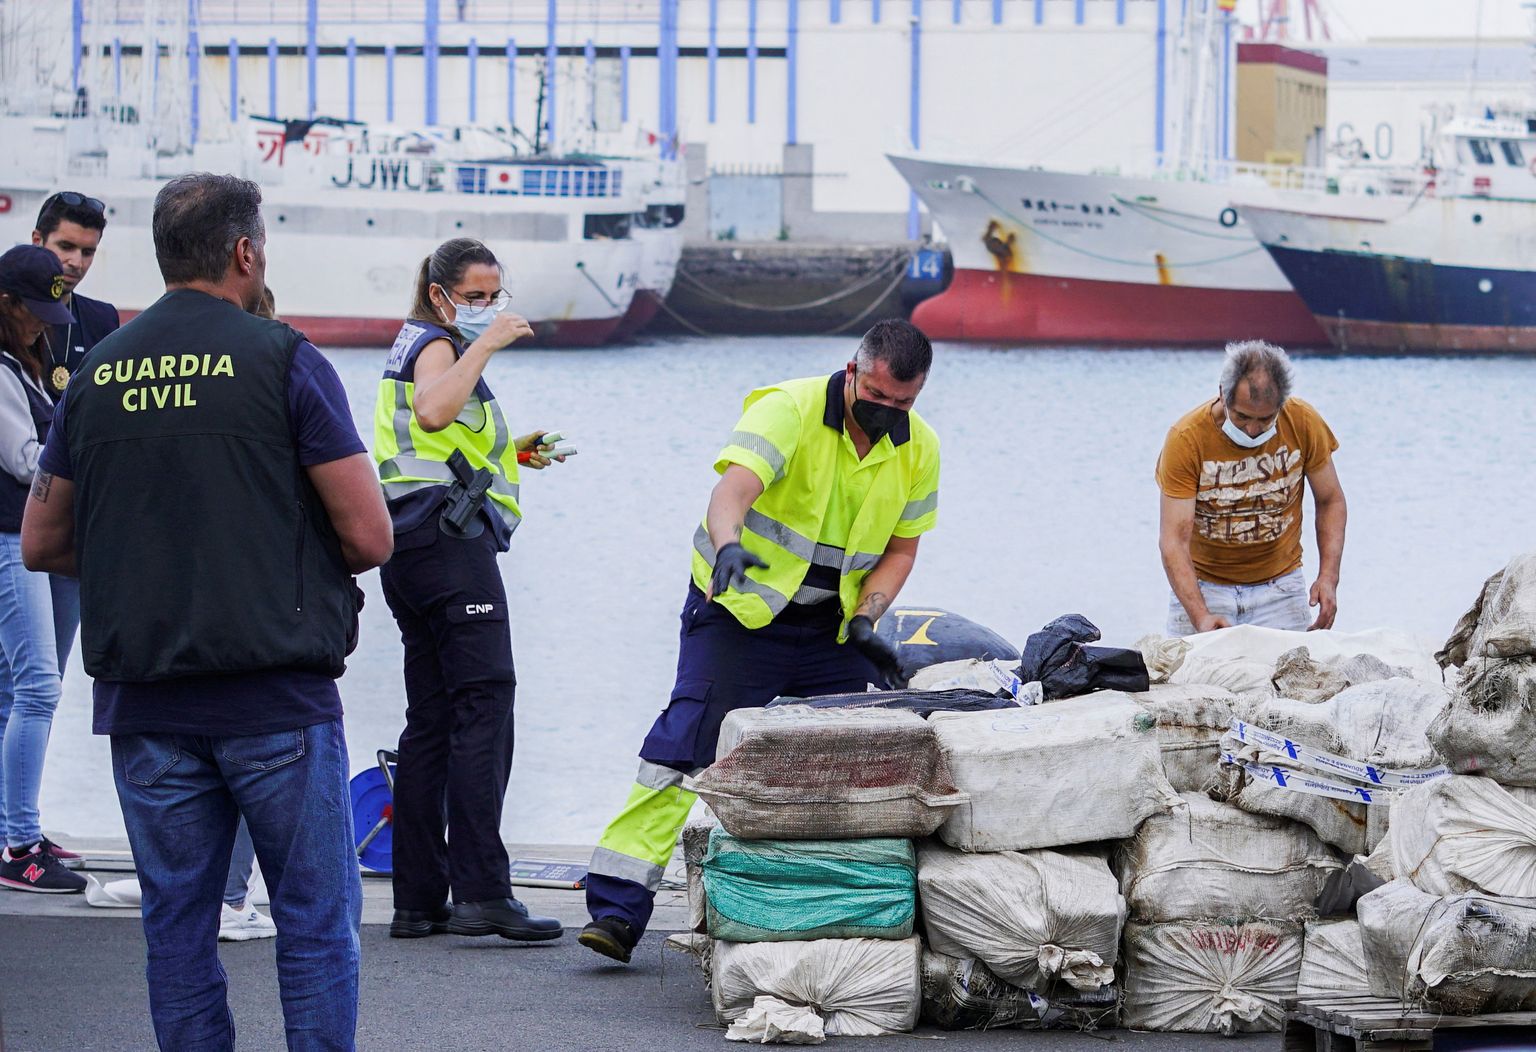 Kanaarisaarte politsei konfiskeerimas laevadelt leitud narkootikume 16. aprillil 2022. Pilt on illustratiivne.